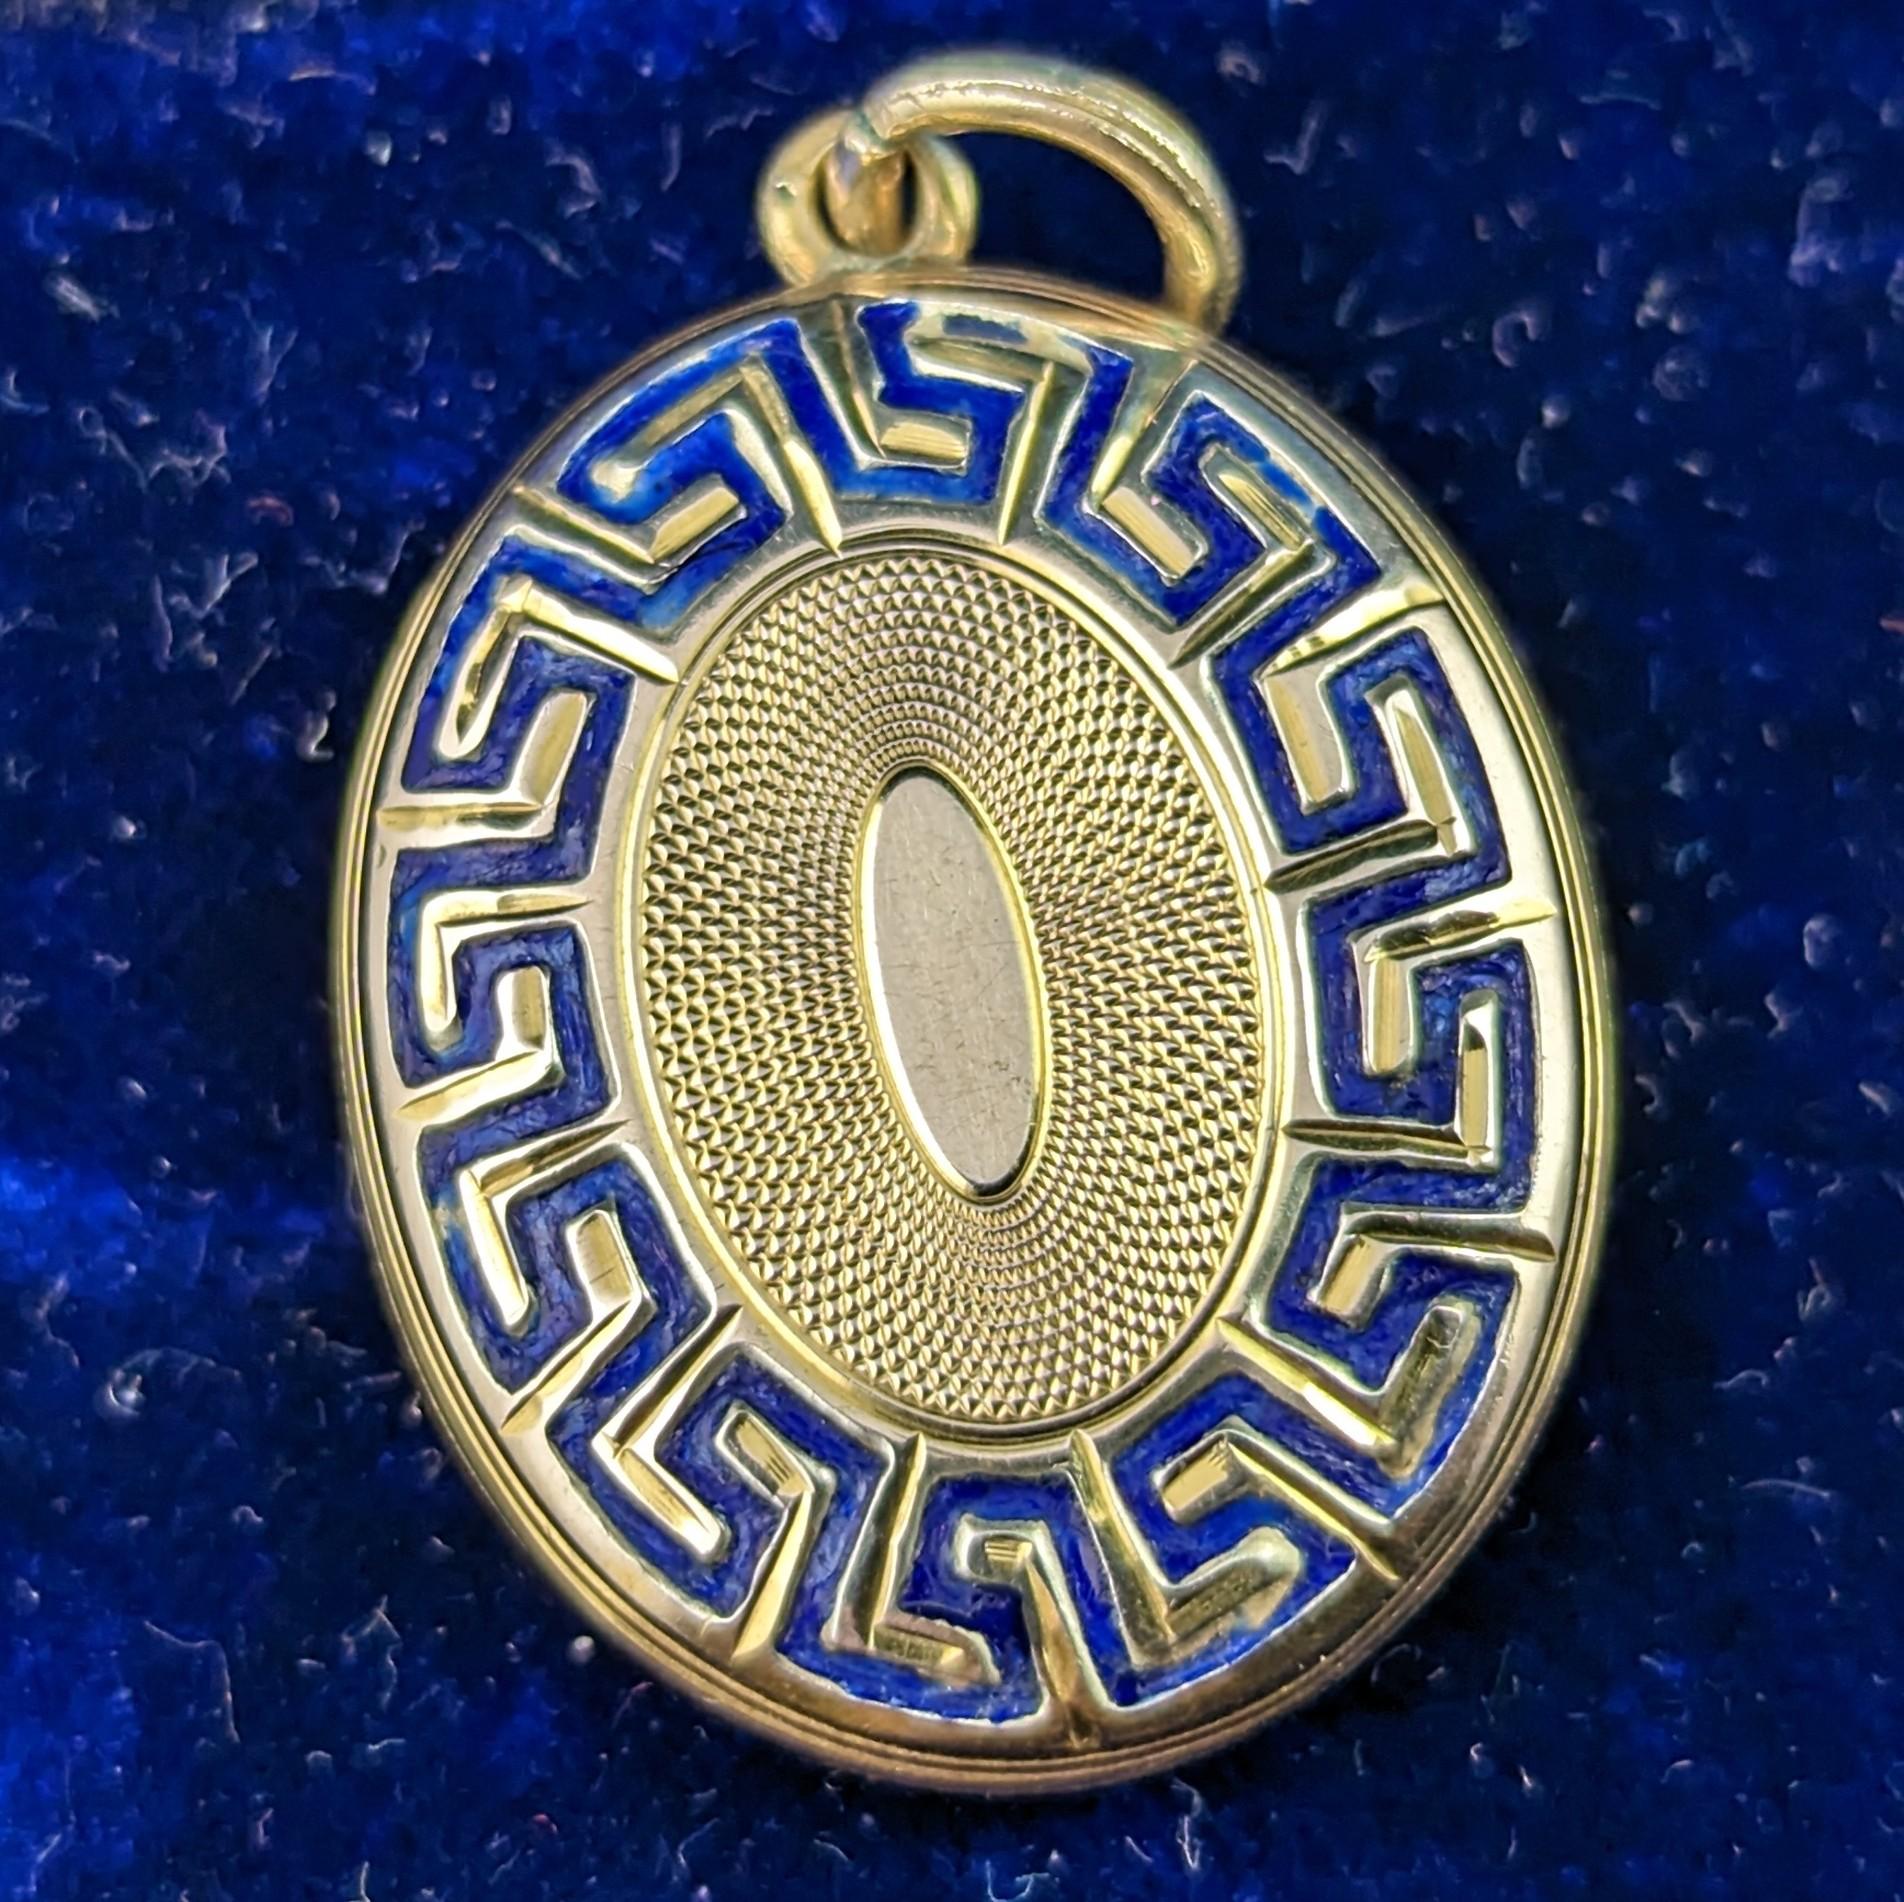 Antique 9k gold and blue enamel mourning locket, Greek key design  5